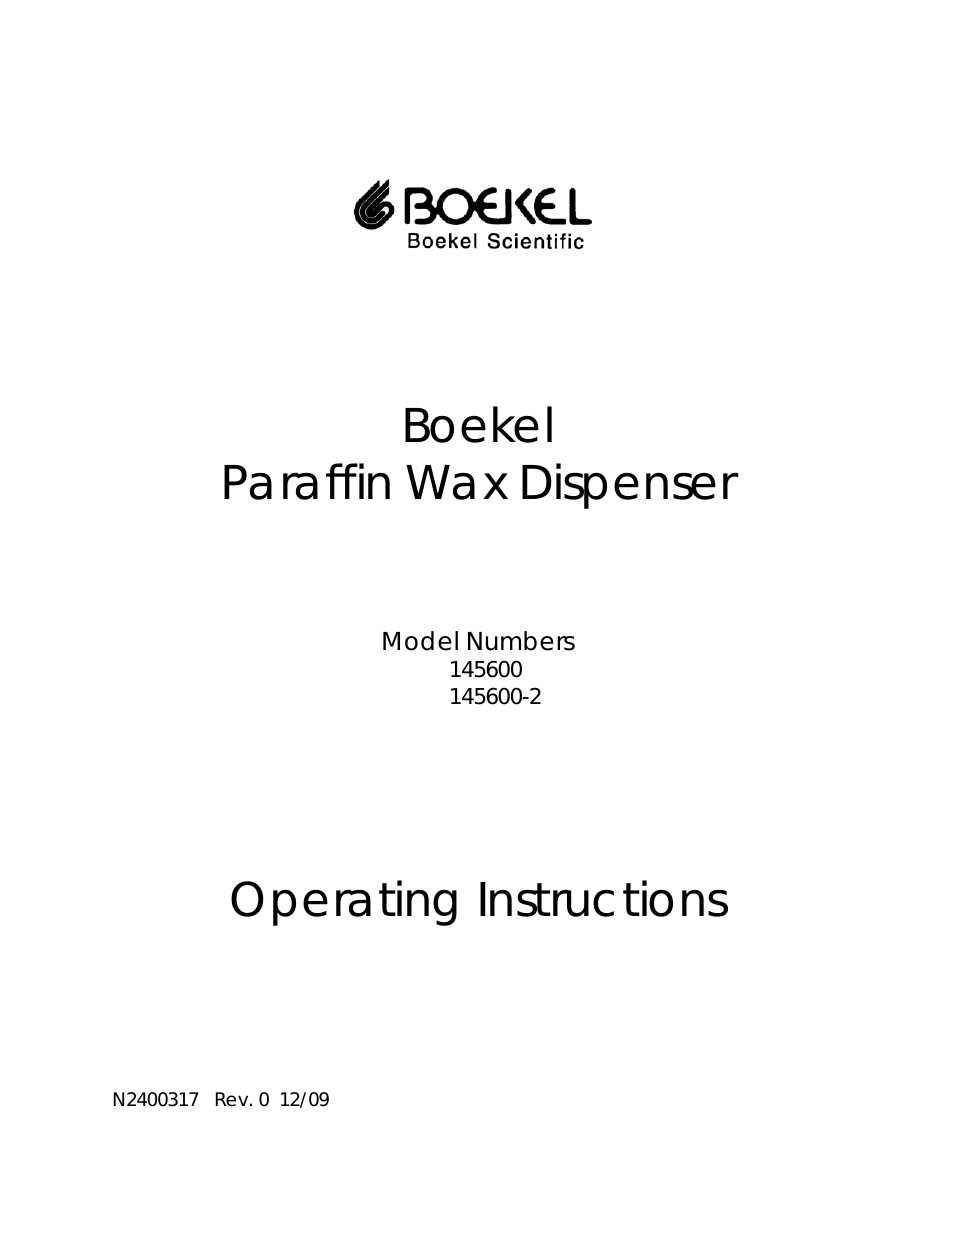 145600-2  Paraffin Wax Dispenser